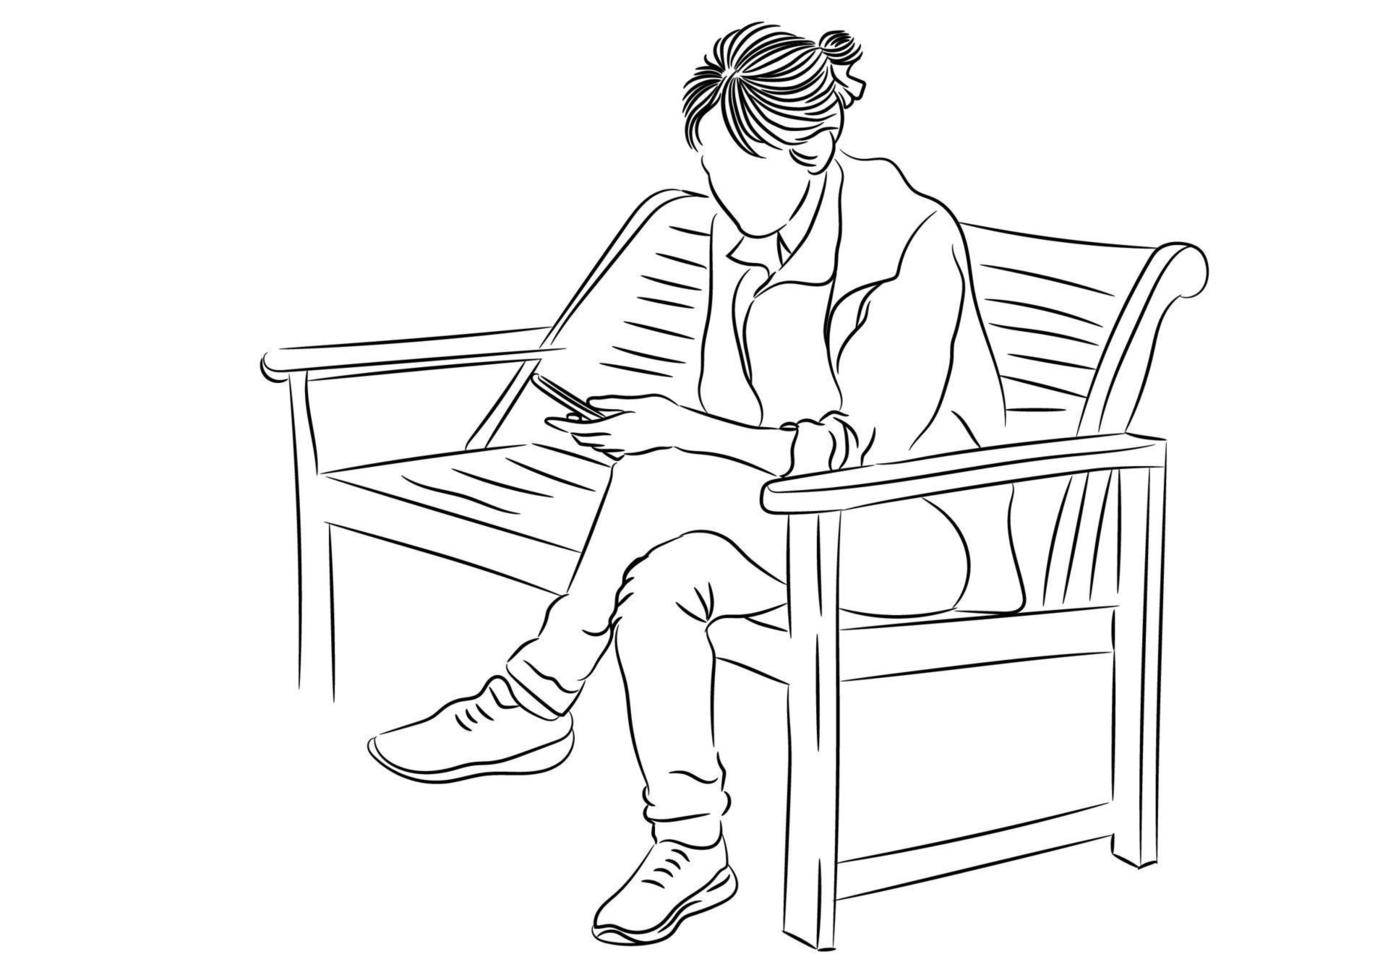 disegno contorno donna d'affari sedersi su una sedia e utilizzare uno smartphone, illustrazione vettoriale isolato su sfondo bianco